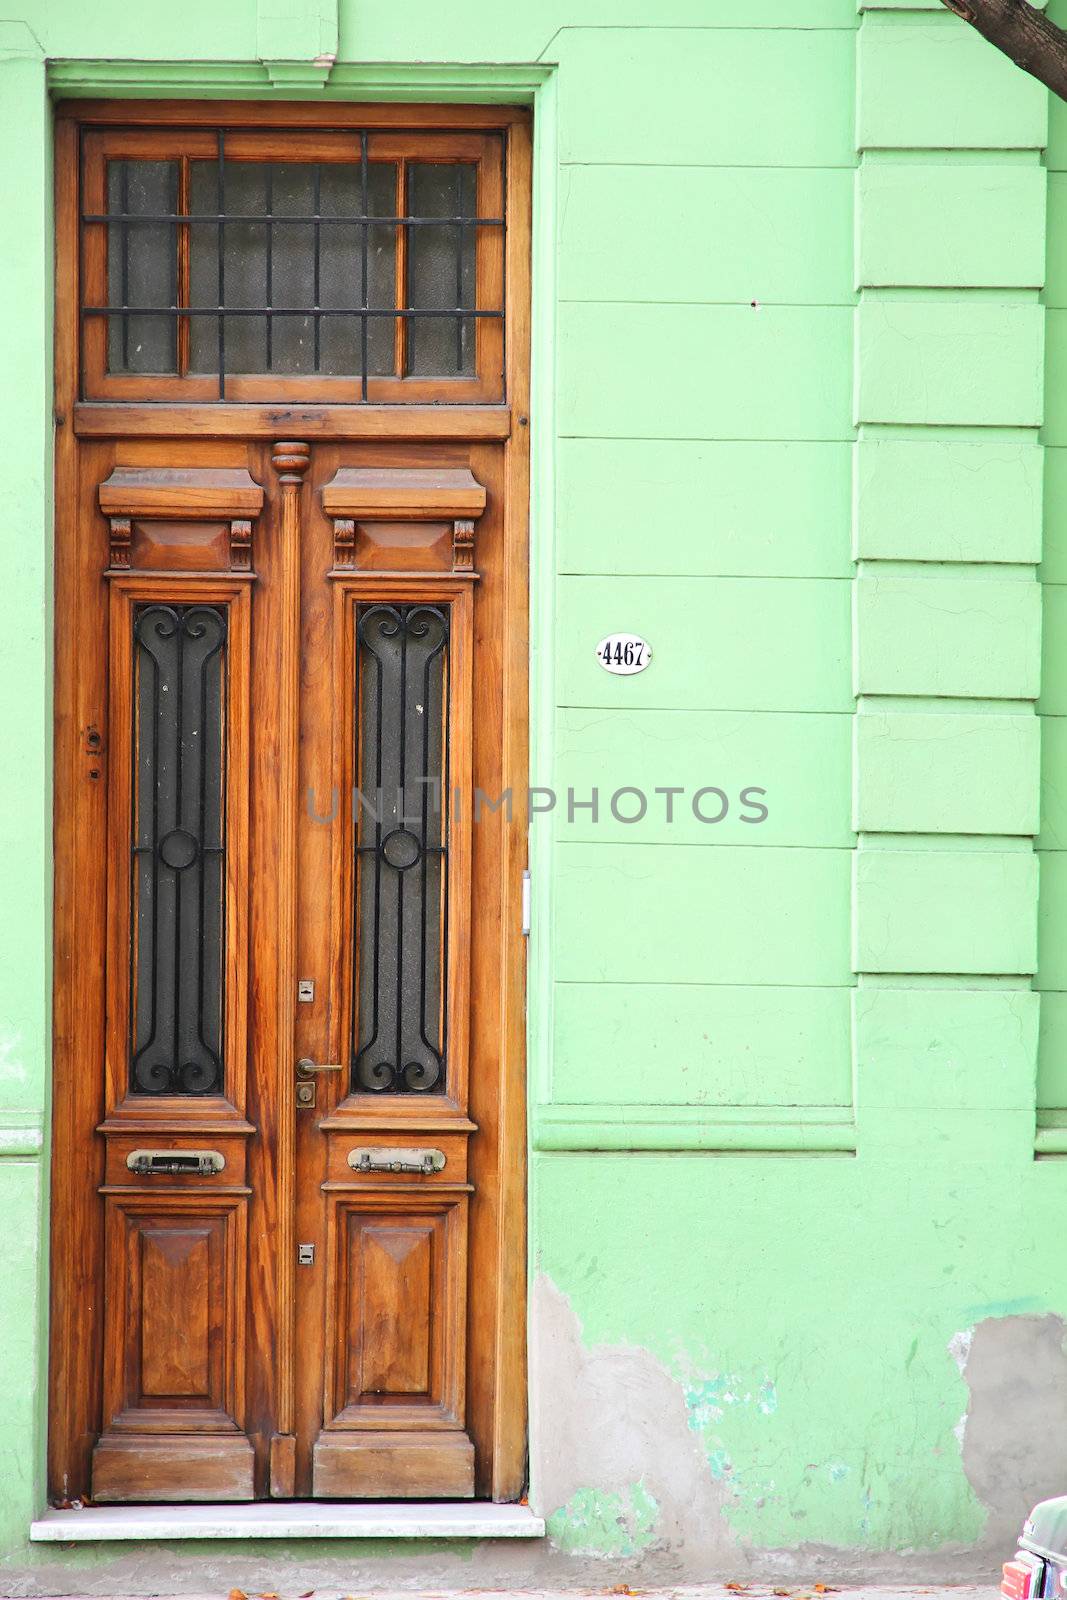 A door in Palermo viejo, Buenos Aires.